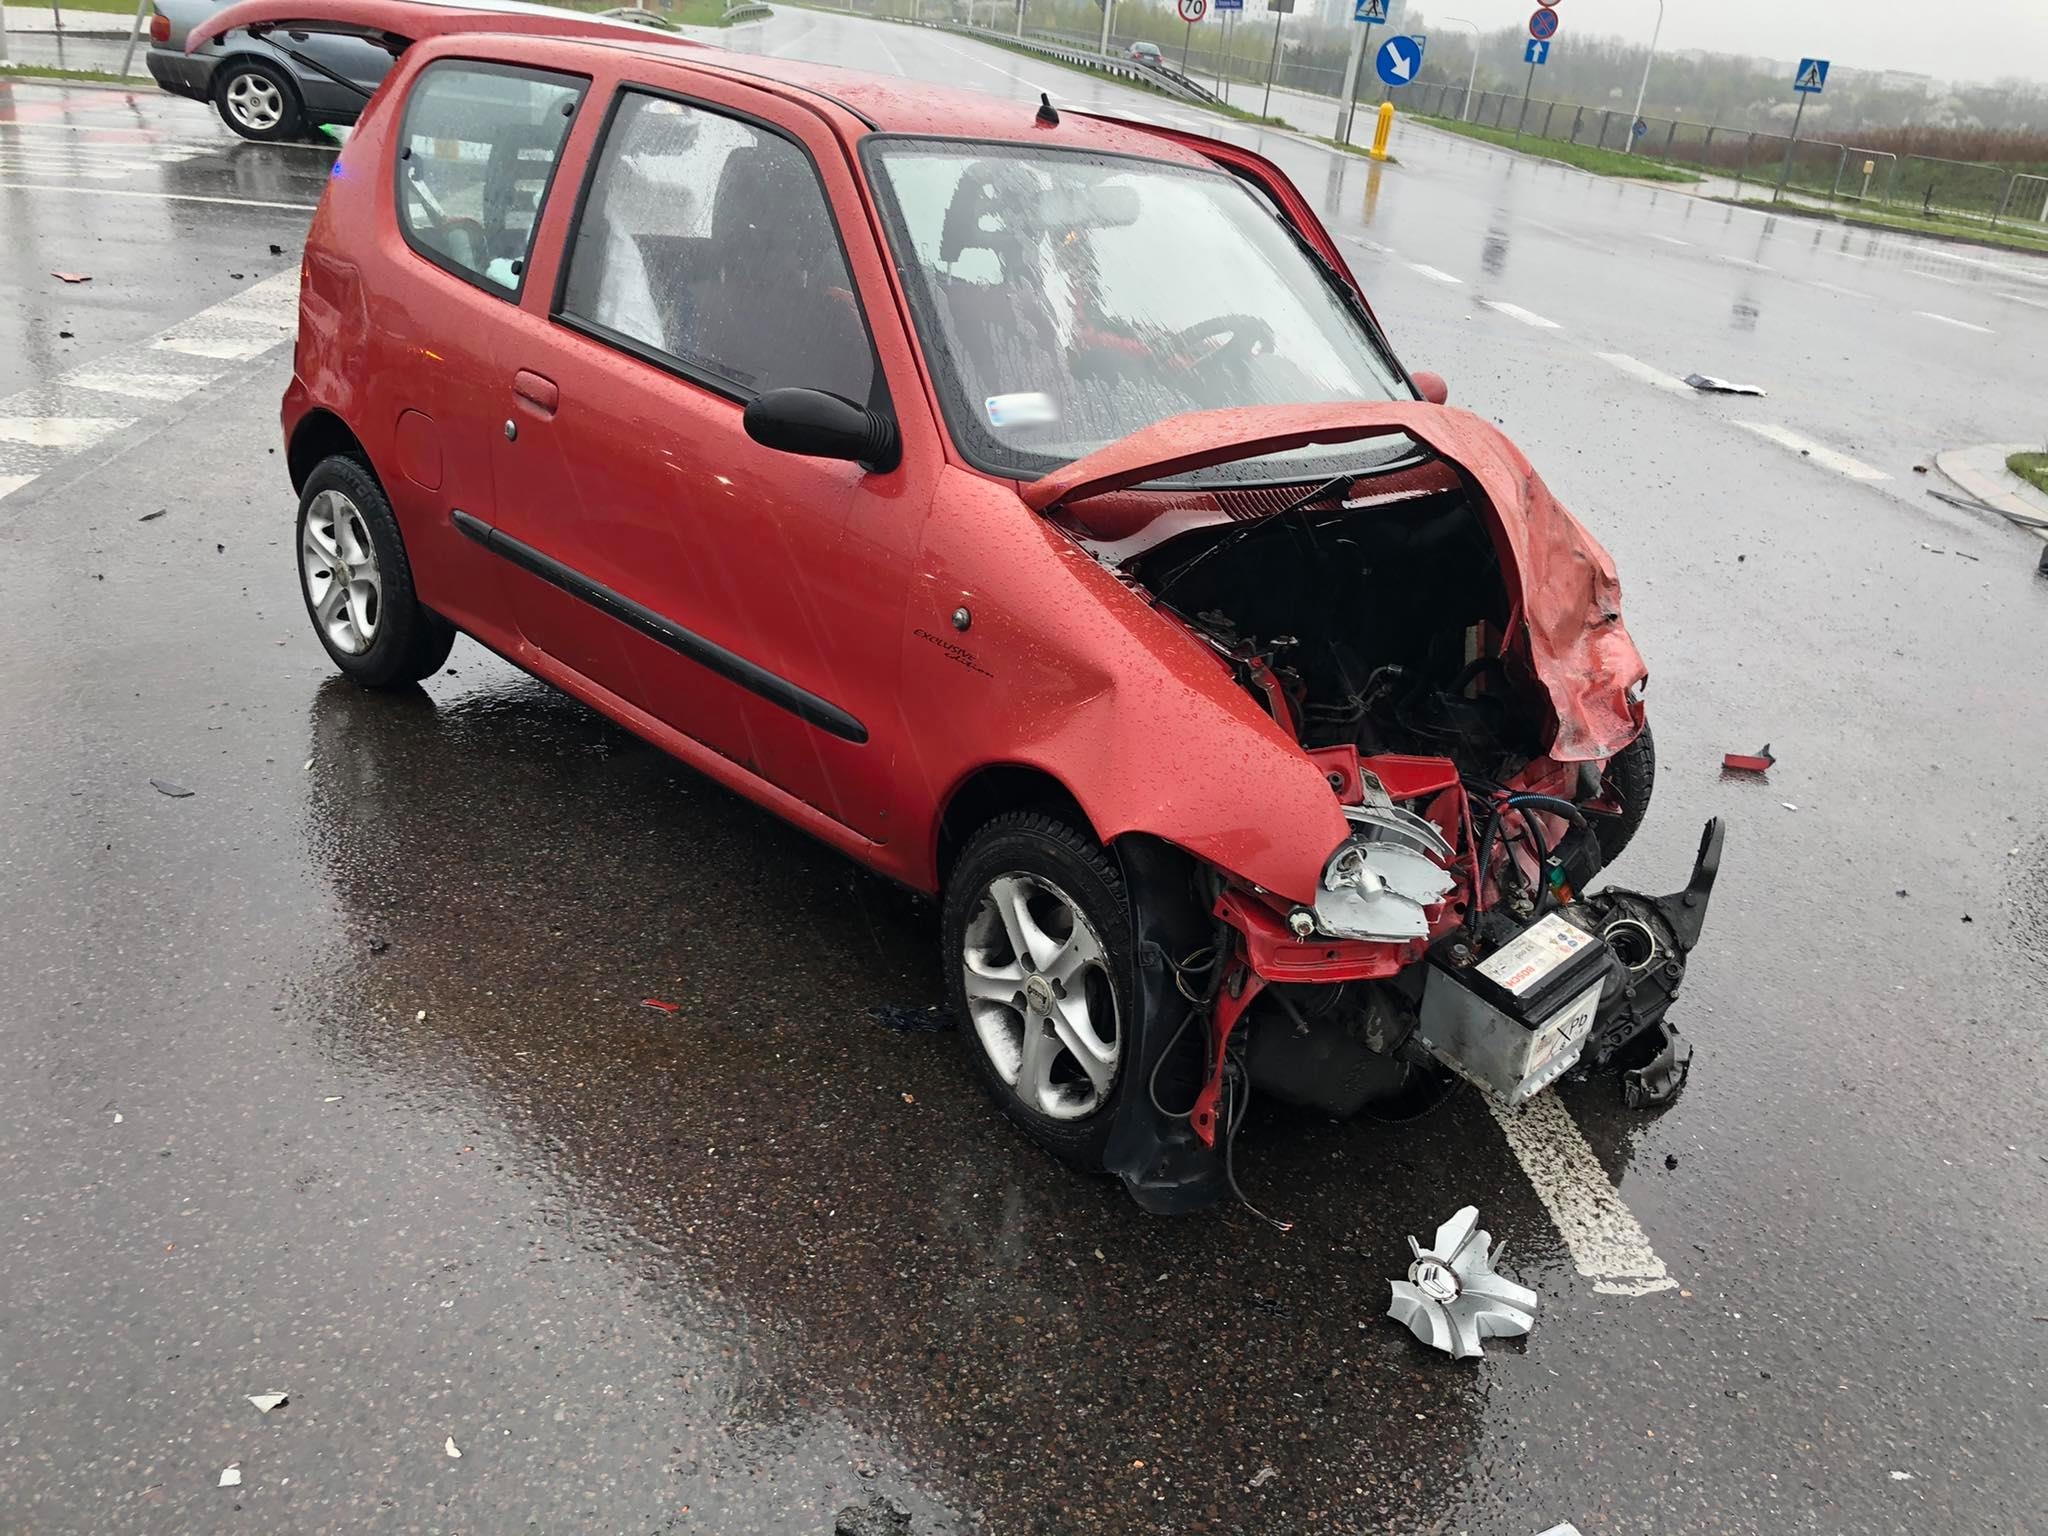 Groźny wypadek w Lublinie, skrzyżowanie jest częściowo nieprzejezdne (zdjęcia)